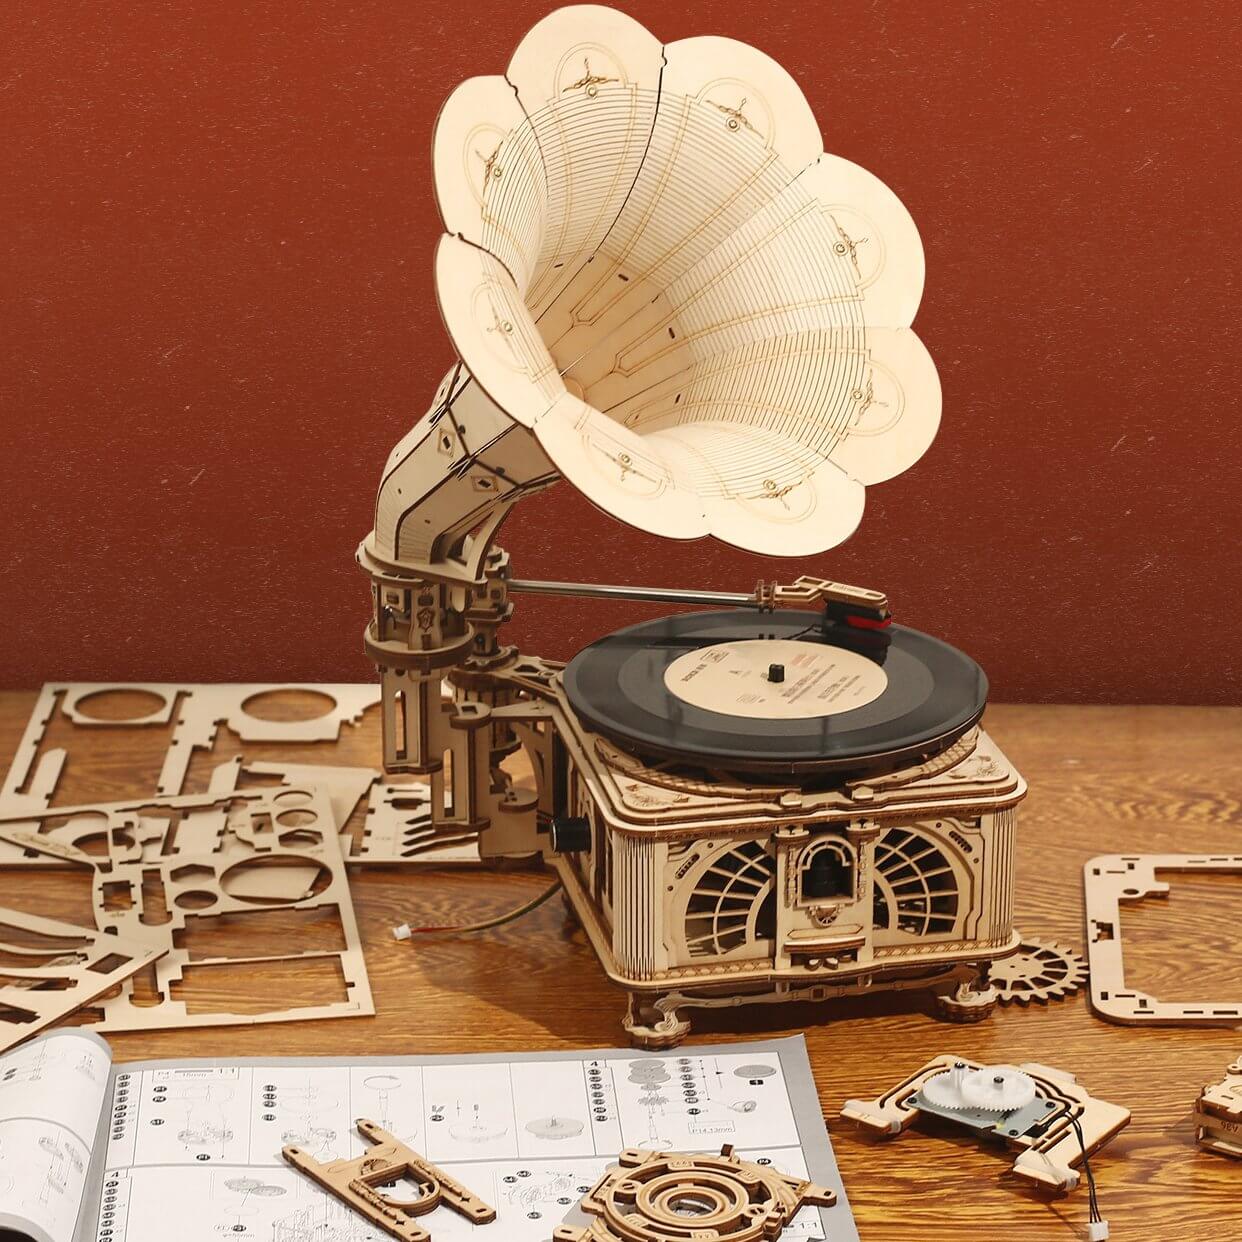 クランククラシック蓄音機キット | Kidstoylover - DIY木製アセンブリおもちゃ